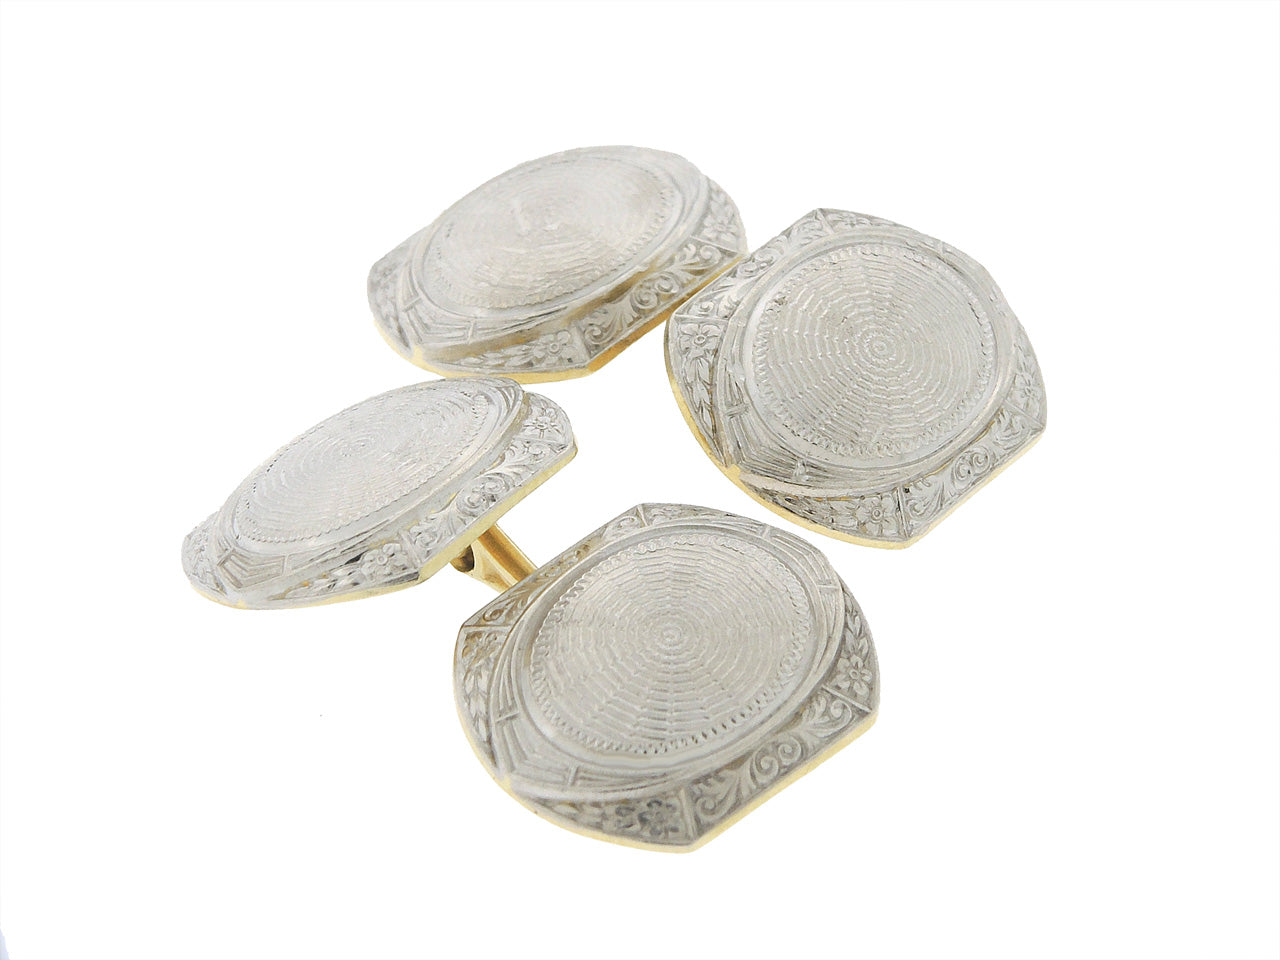 Antique Edwardian Cufflinks in Platinum and 14K